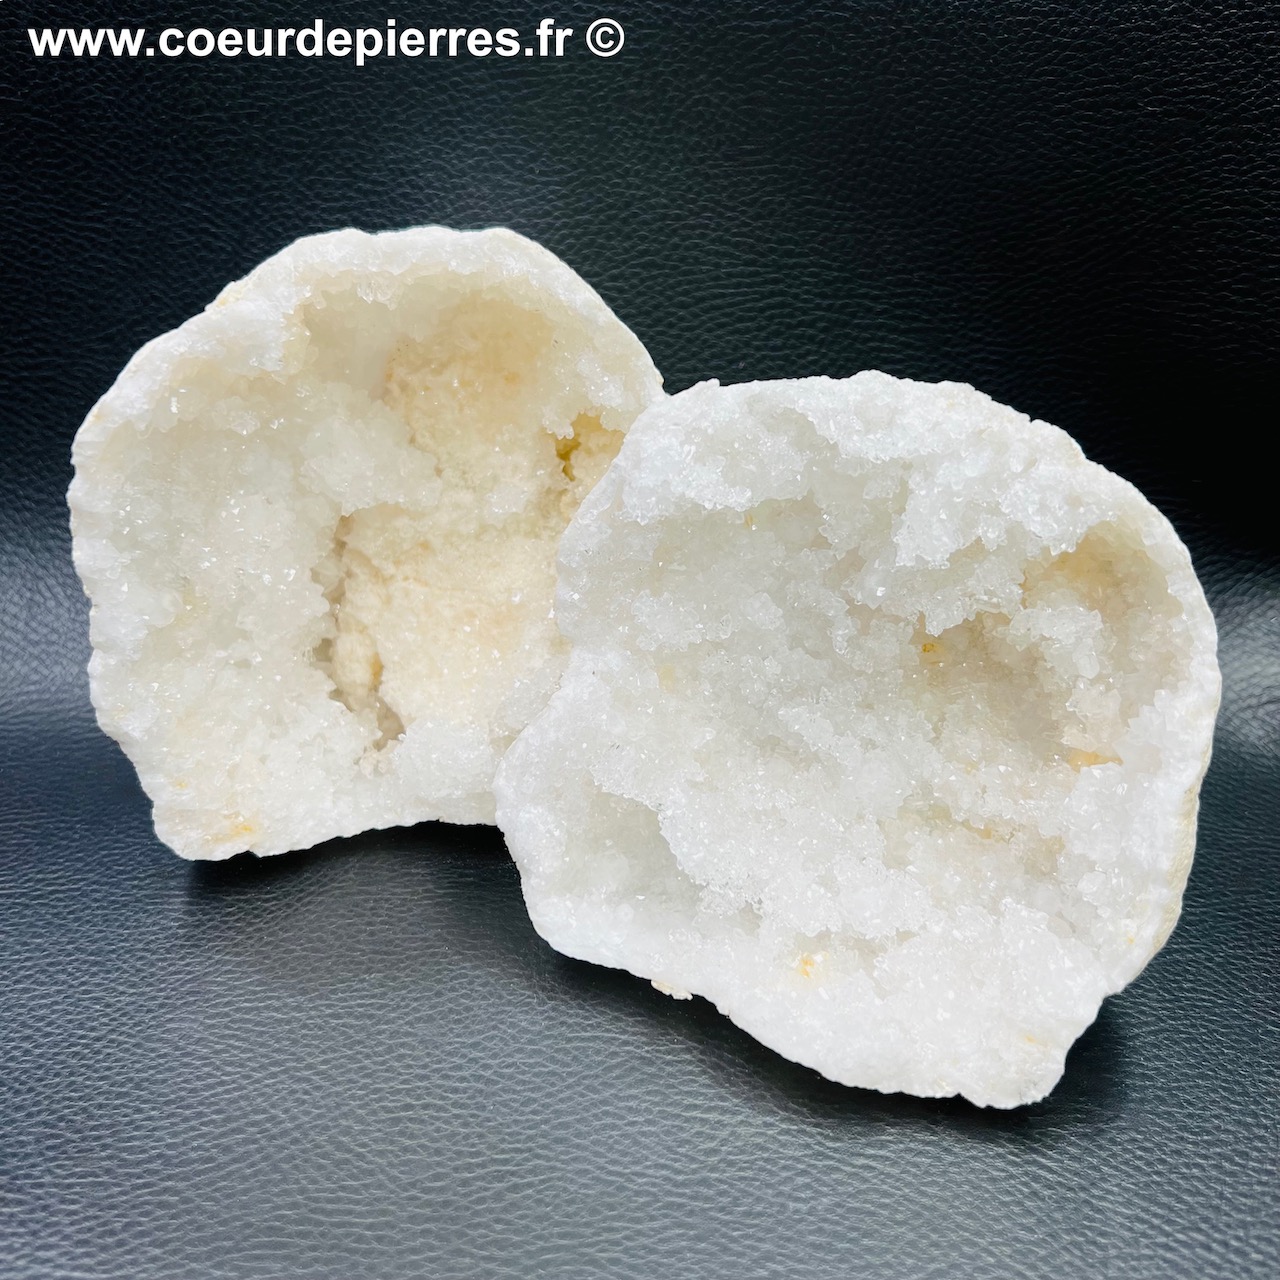 Géode de cristal de roche du Maroc 1,021kg (réf gcr15)